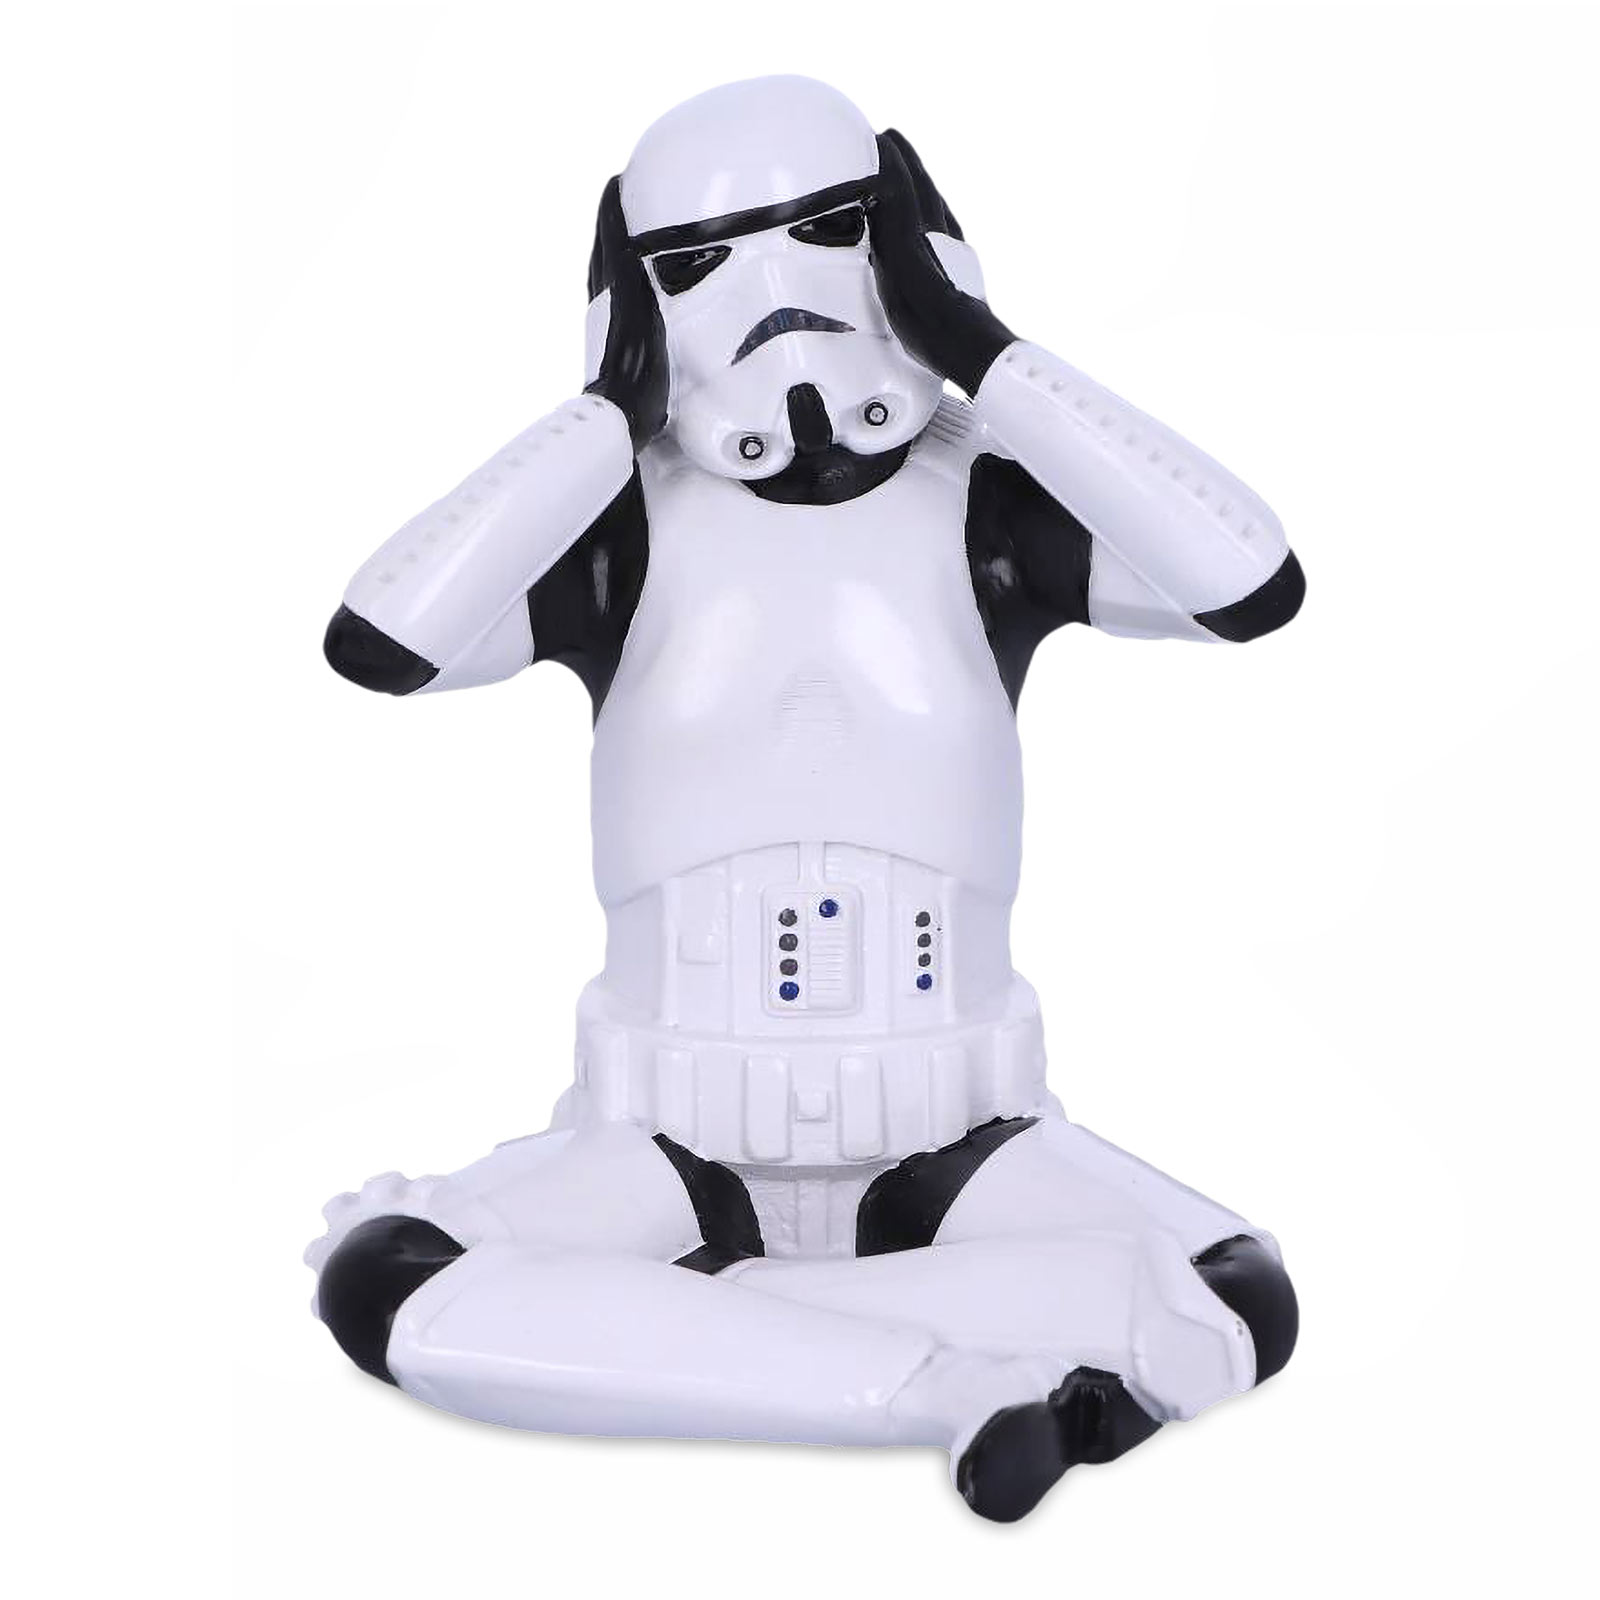 Collectible Stormtrooper Figurine Hear See Speak No Evil Star Wars